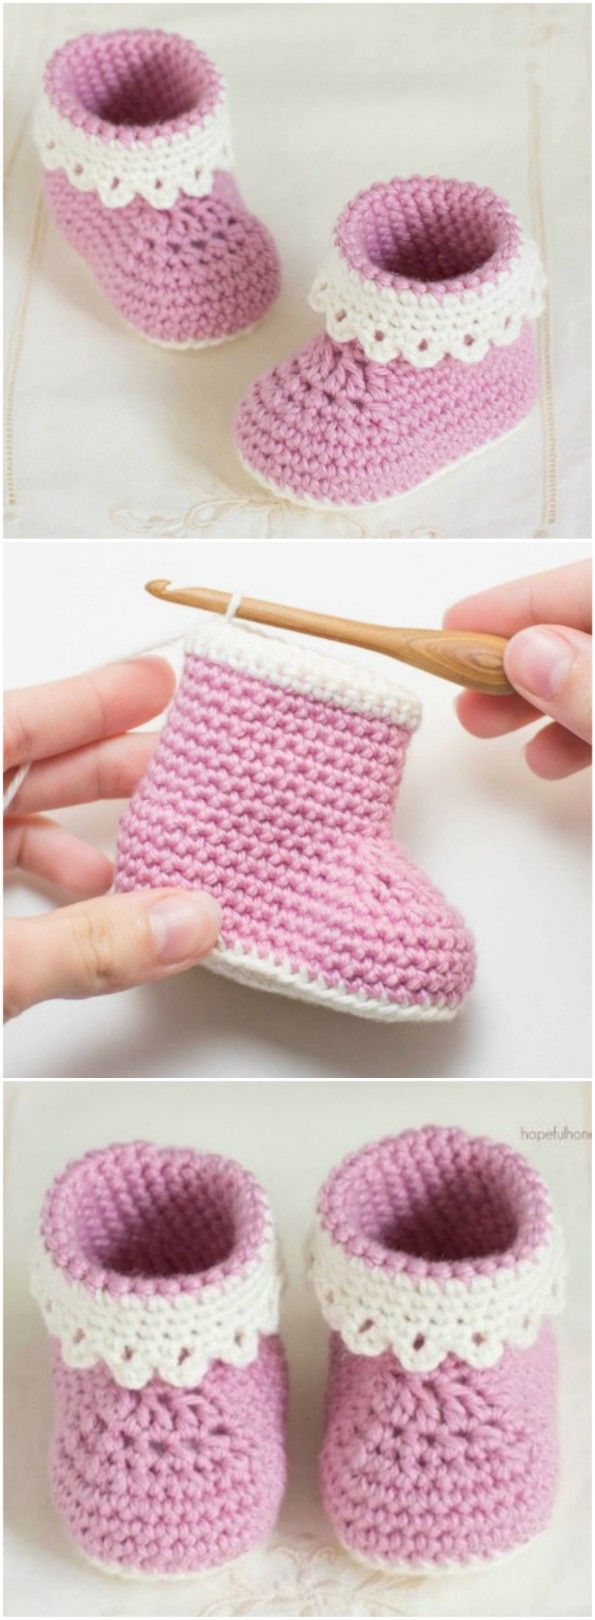 1576229510_276_Crochet-Baby-Booties-Pattern-Lots-of-The-Sweetest-Idea.jpg